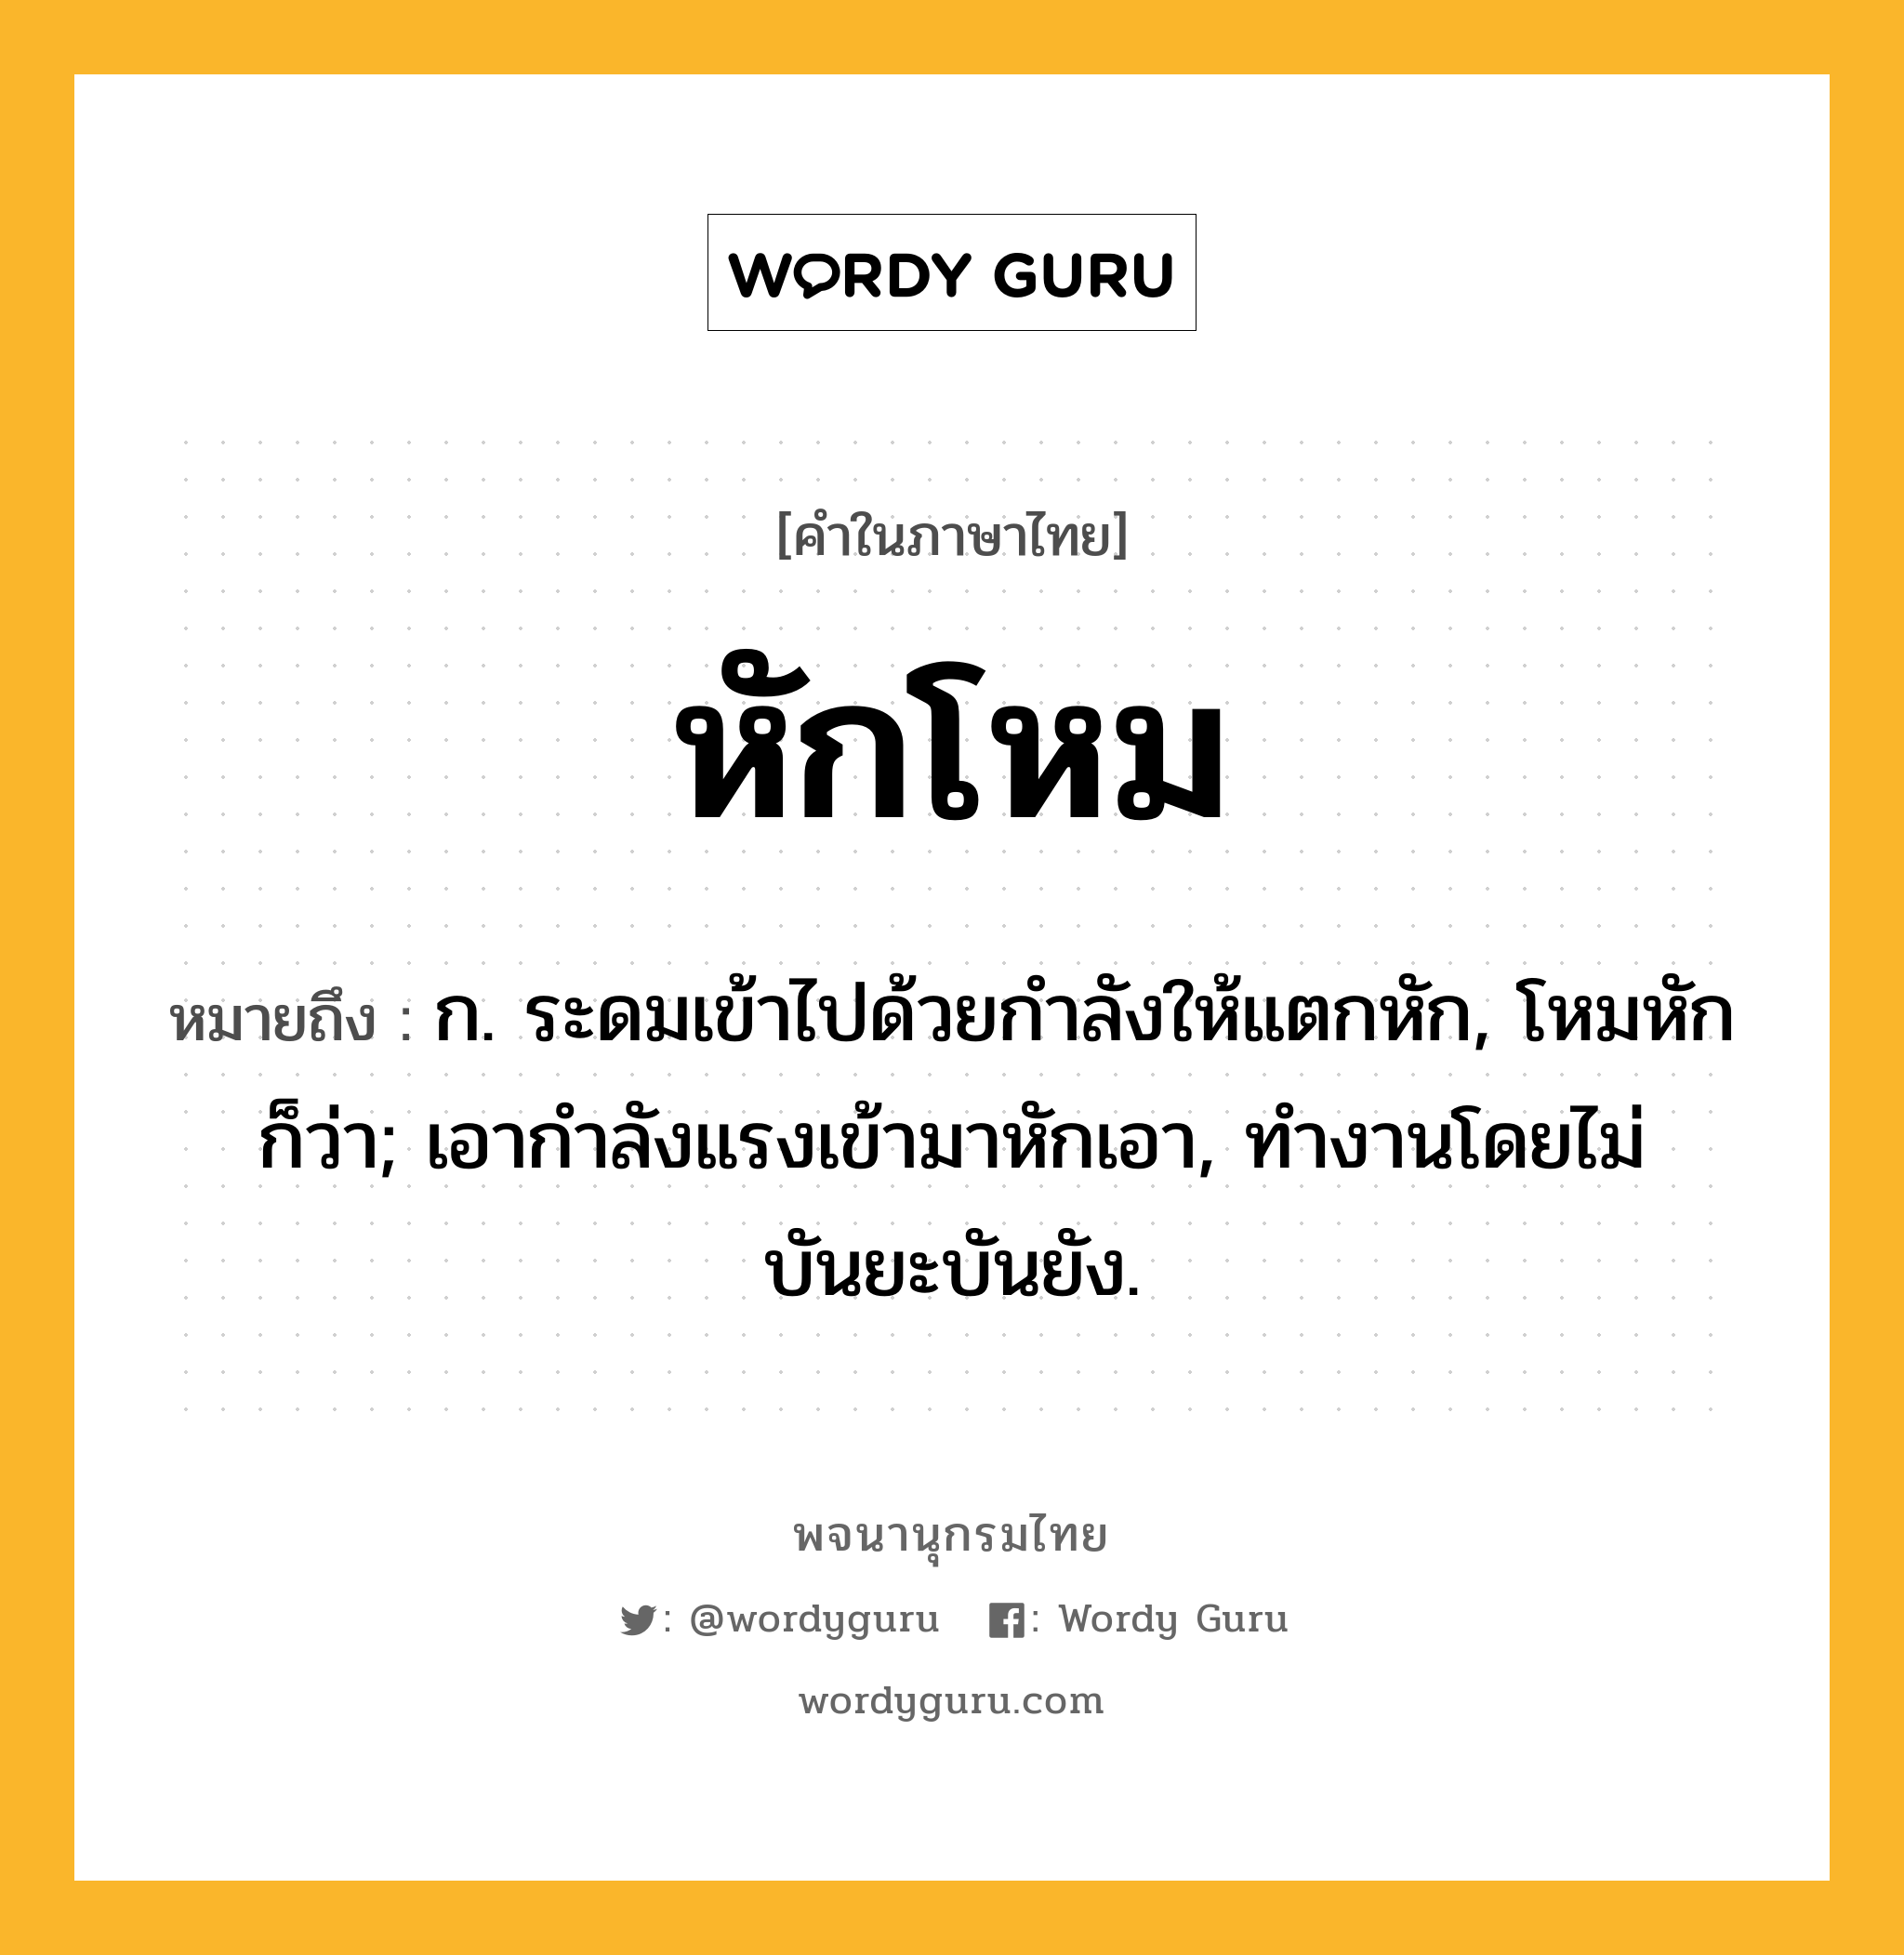 หักโหม ความหมาย หมายถึงอะไร?, คำในภาษาไทย หักโหม หมายถึง ก. ระดมเข้าไปด้วยกำลังให้แตกหัก, โหมหัก ก็ว่า; เอากําลังแรงเข้ามาหักเอา, ทํางานโดยไม่บันยะบันยัง.